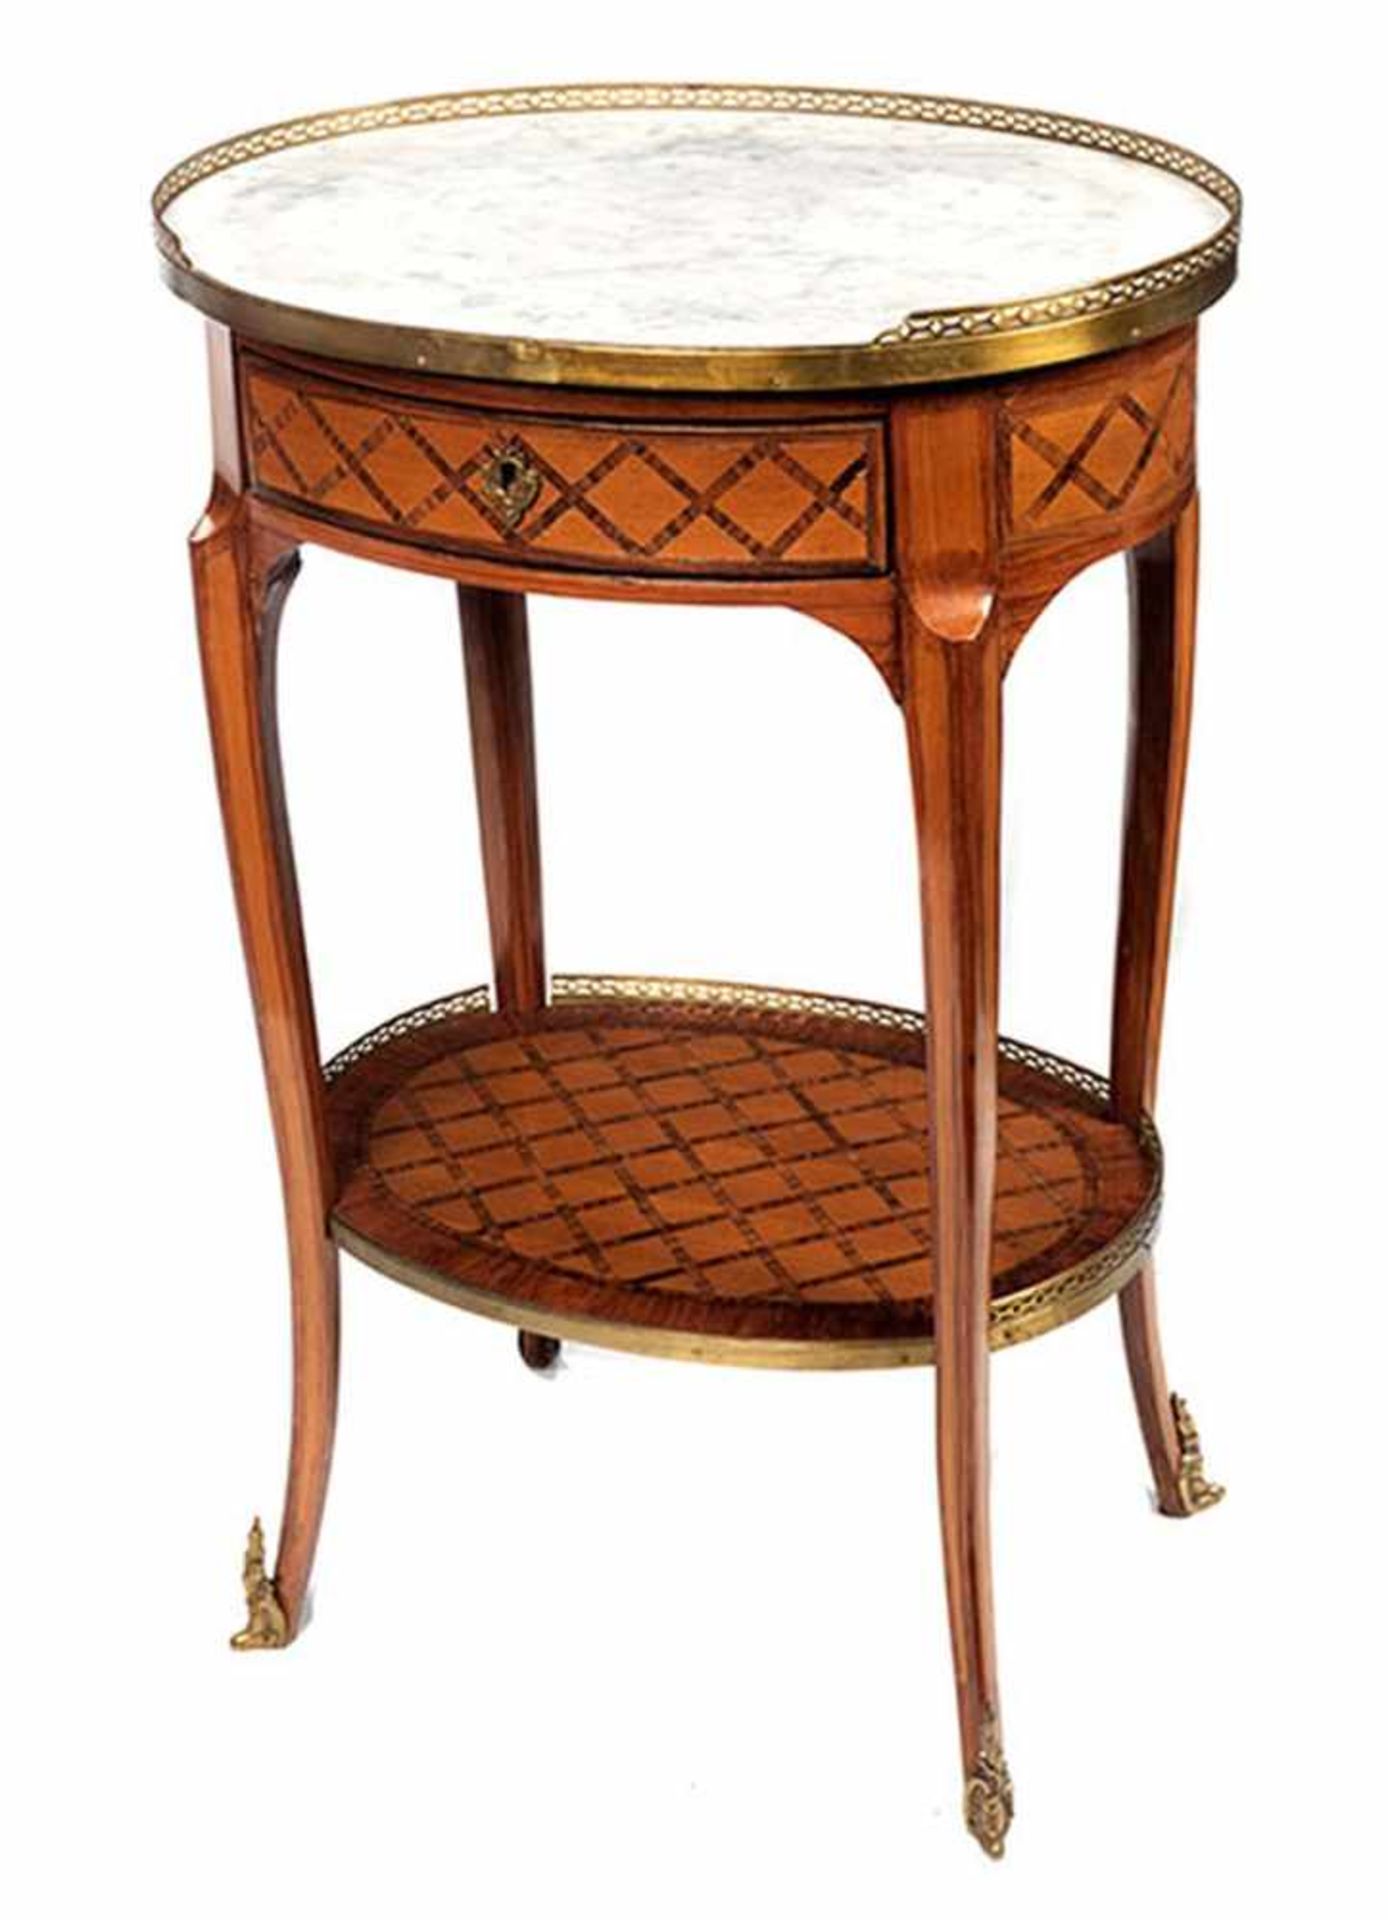 Ovales Tischchen Höhe: 71 cm. Durchmesser: 48 cm. Gestemelt "N.A. Lapie". Frankreich, zweite - Bild 5 aus 5